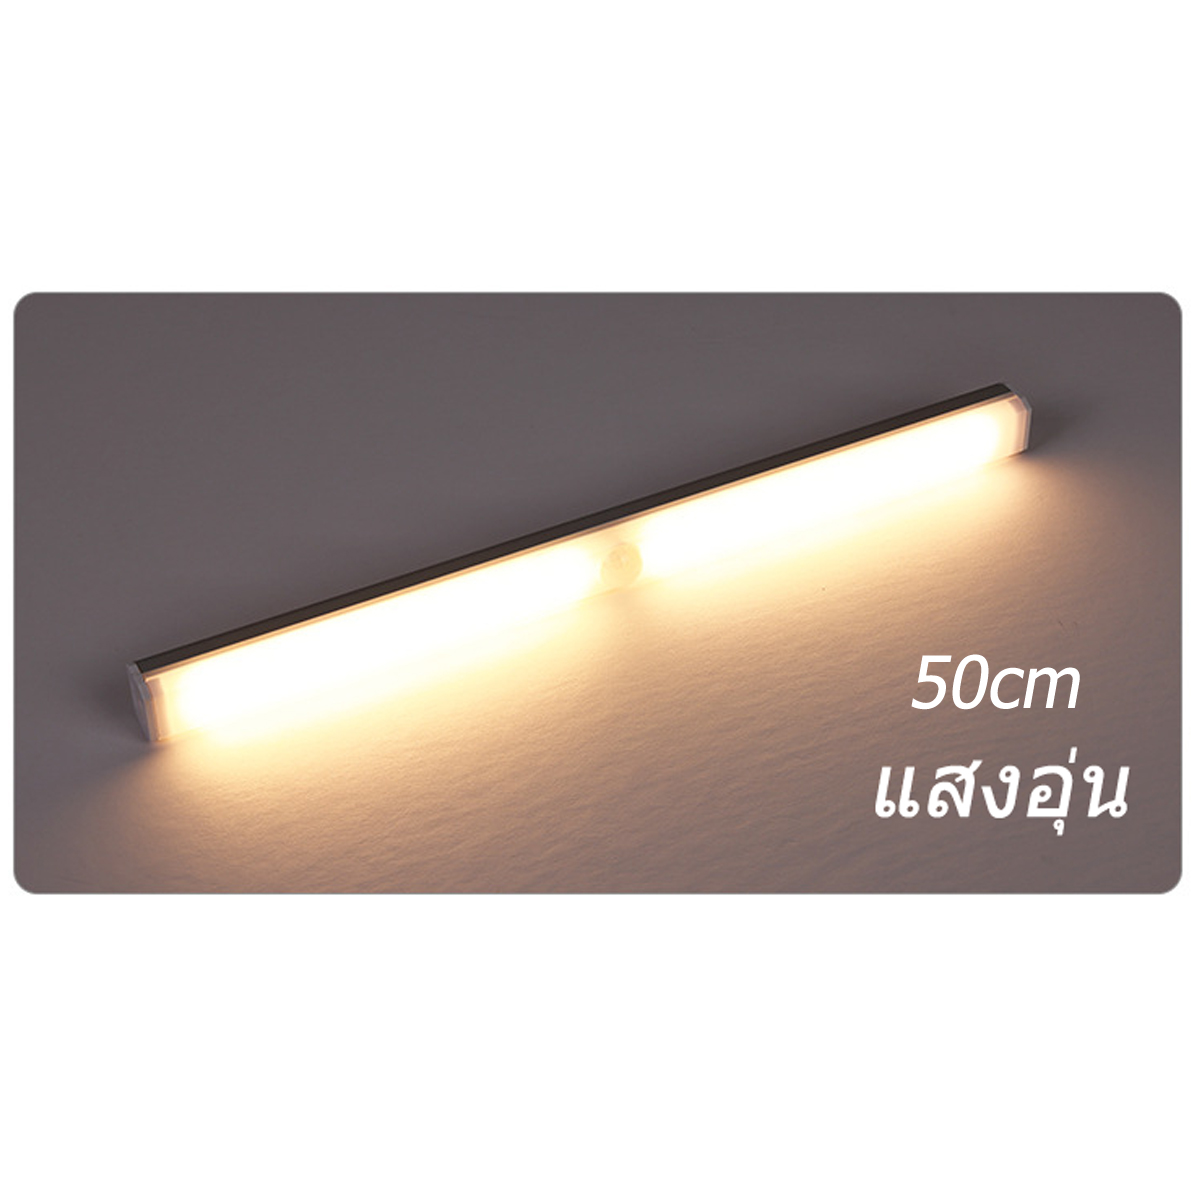 หลอดไฟ ไฟLED หลอดไฟเซ็นเซอร์ หลอดไฟกลางคืน หลอดไฟตรวจจับการเคลื่อนไหว ติดตั้งง่าย ปรับความสว่างได้ะ ไฟห้องนอนเซนเซอ แสงสีขาว/แสงอบอุ่ สี แสงอุ่น 50cm สี แสงอุ่น 50cm